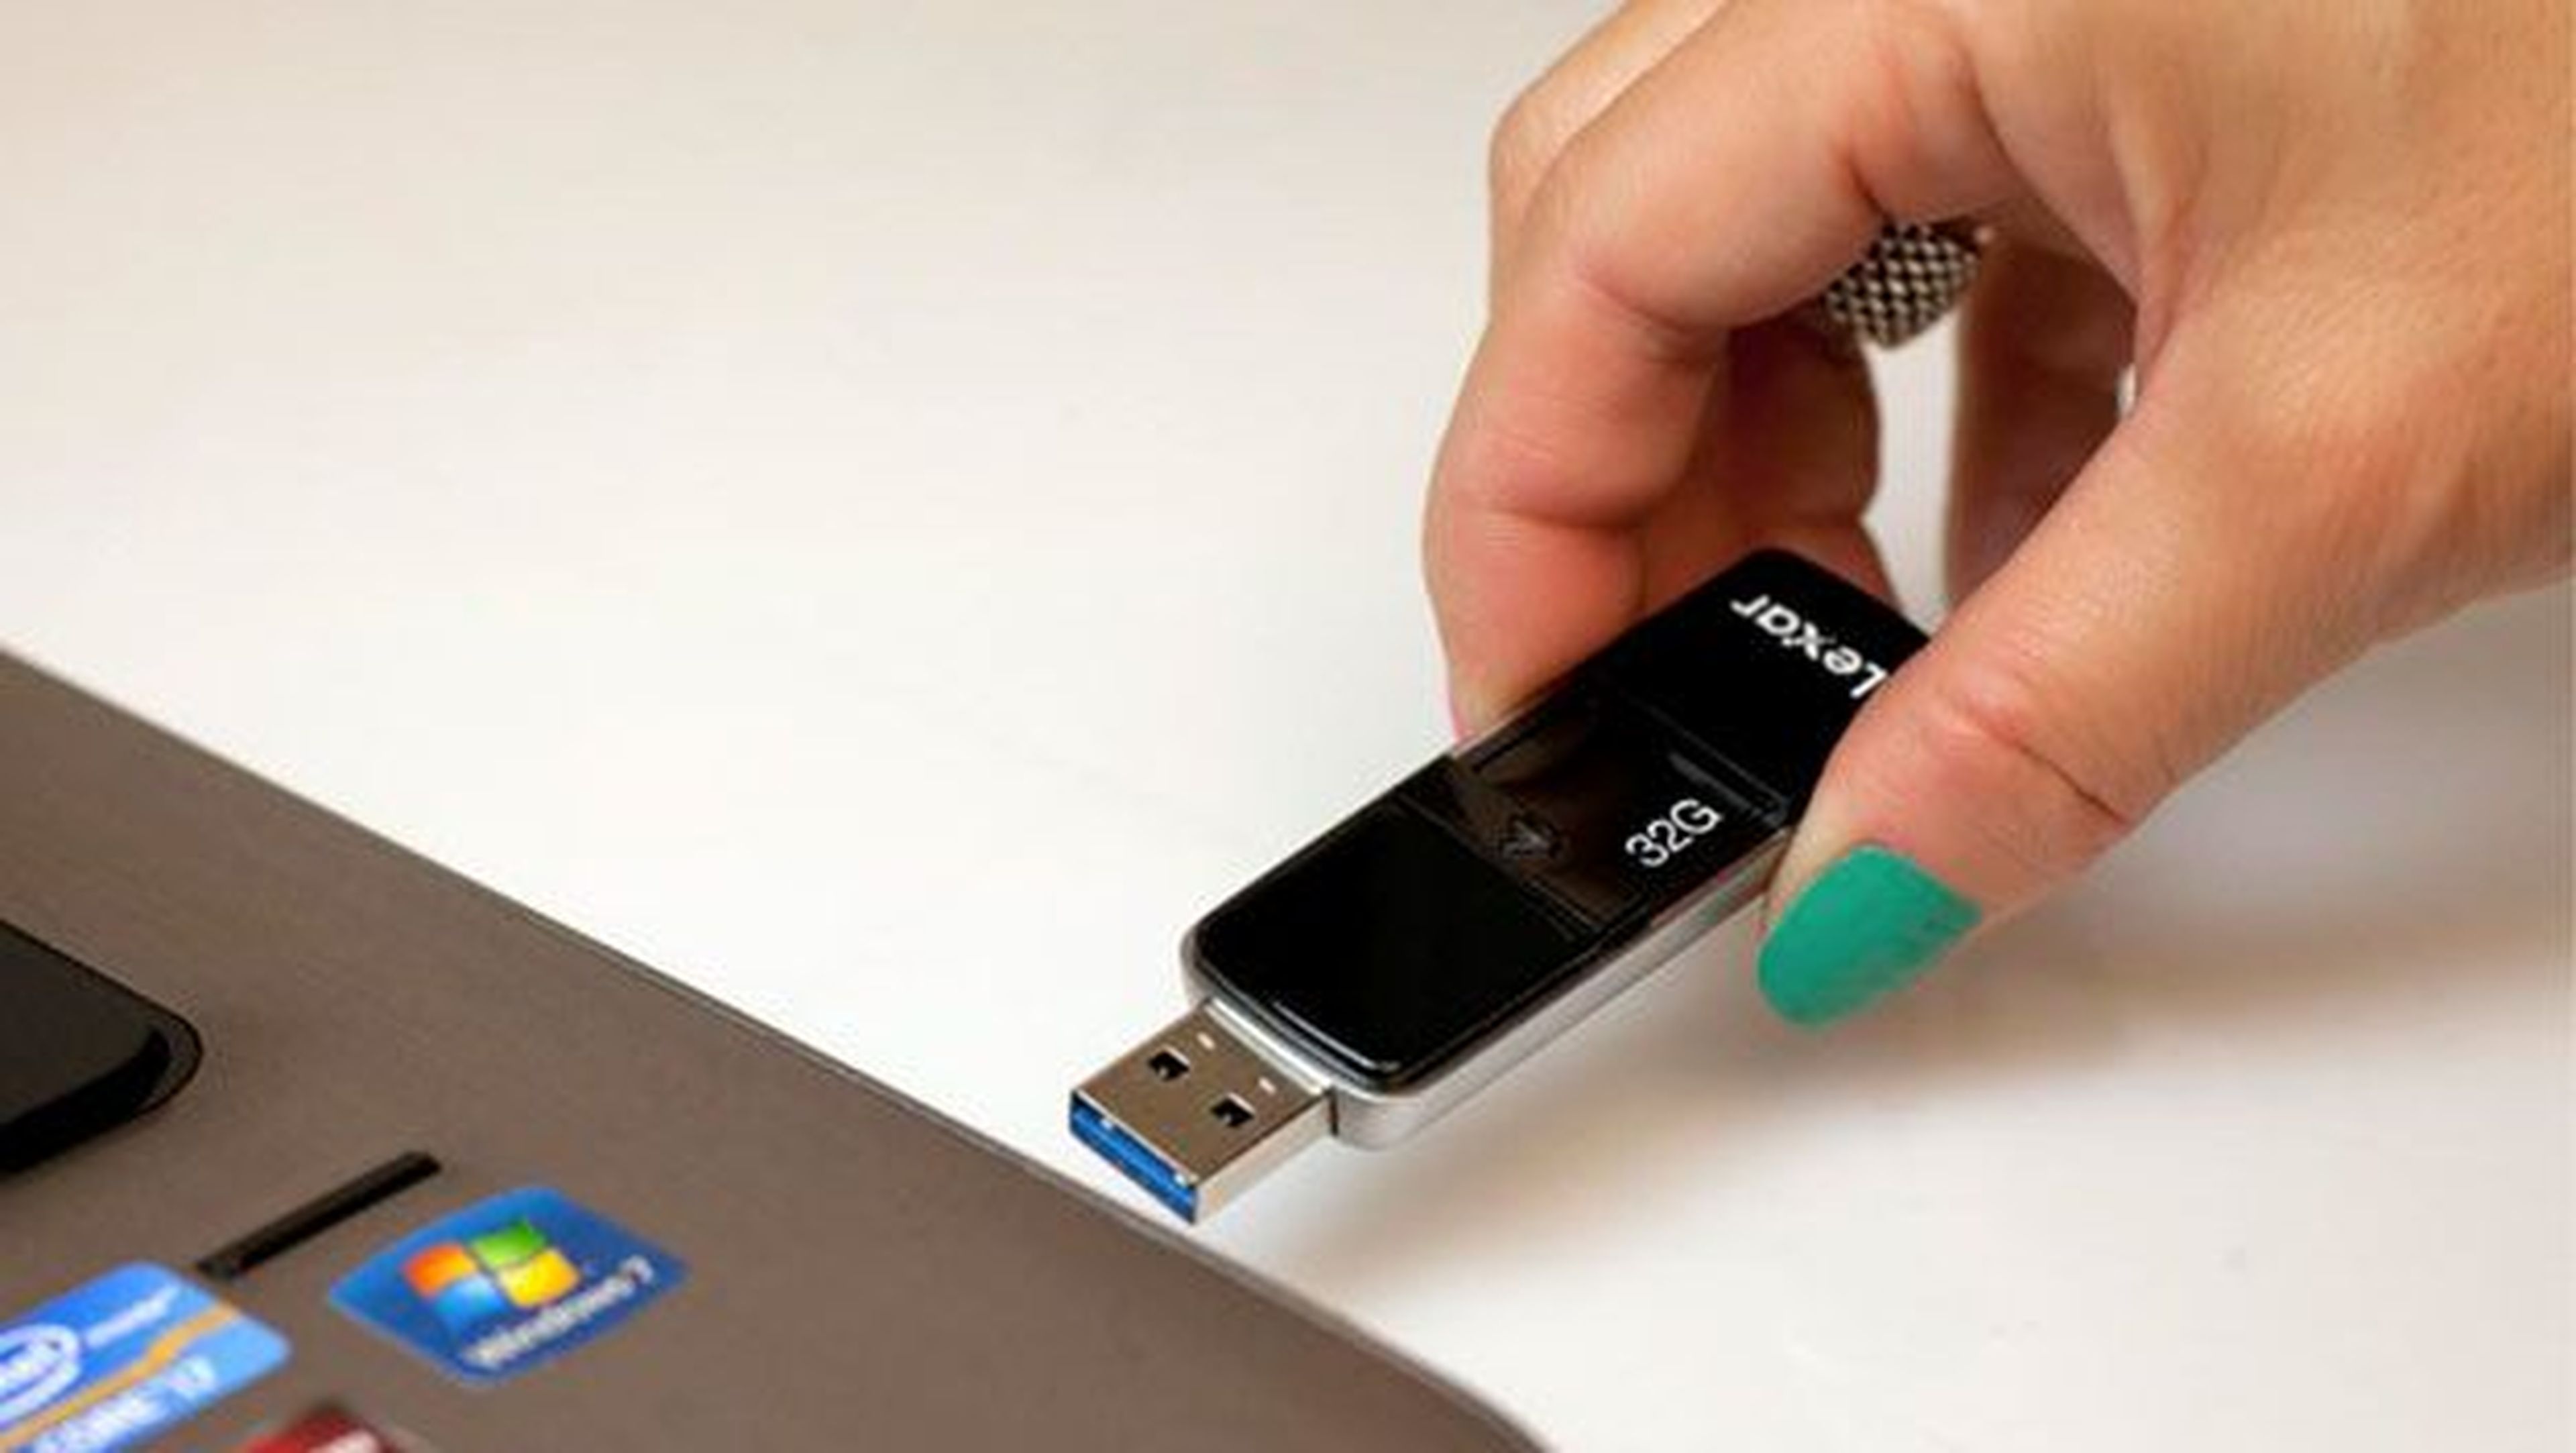 ¿Es importante quitar el USB de forma segura?